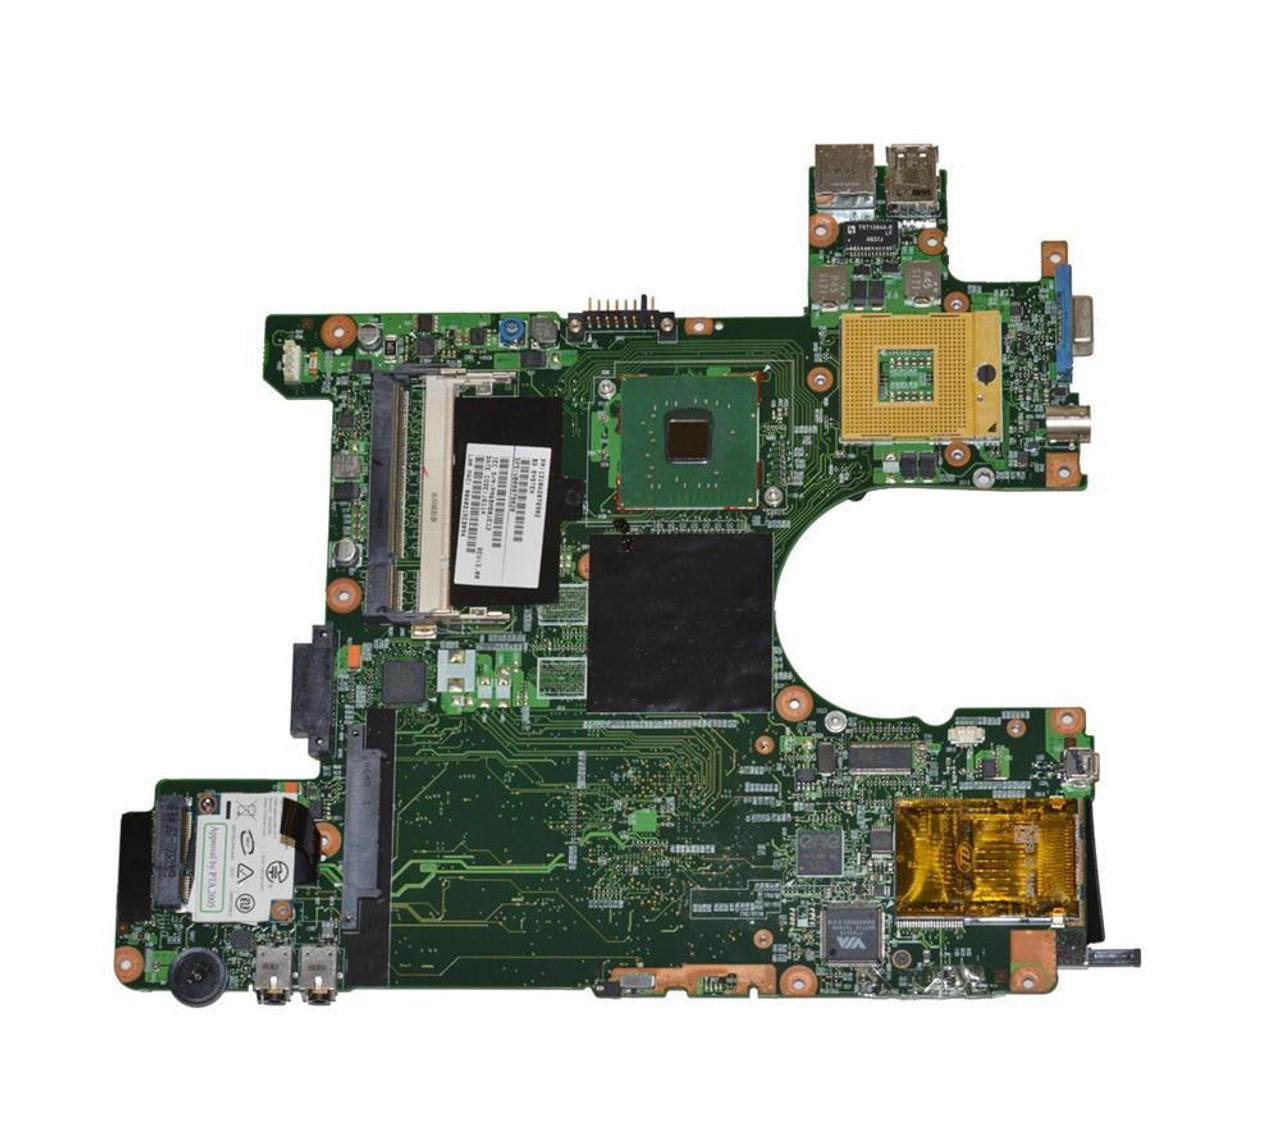 V0000780140 Toshiba System Board (Motherboard) Socket 478 for Satellite M115 (Refurbished)